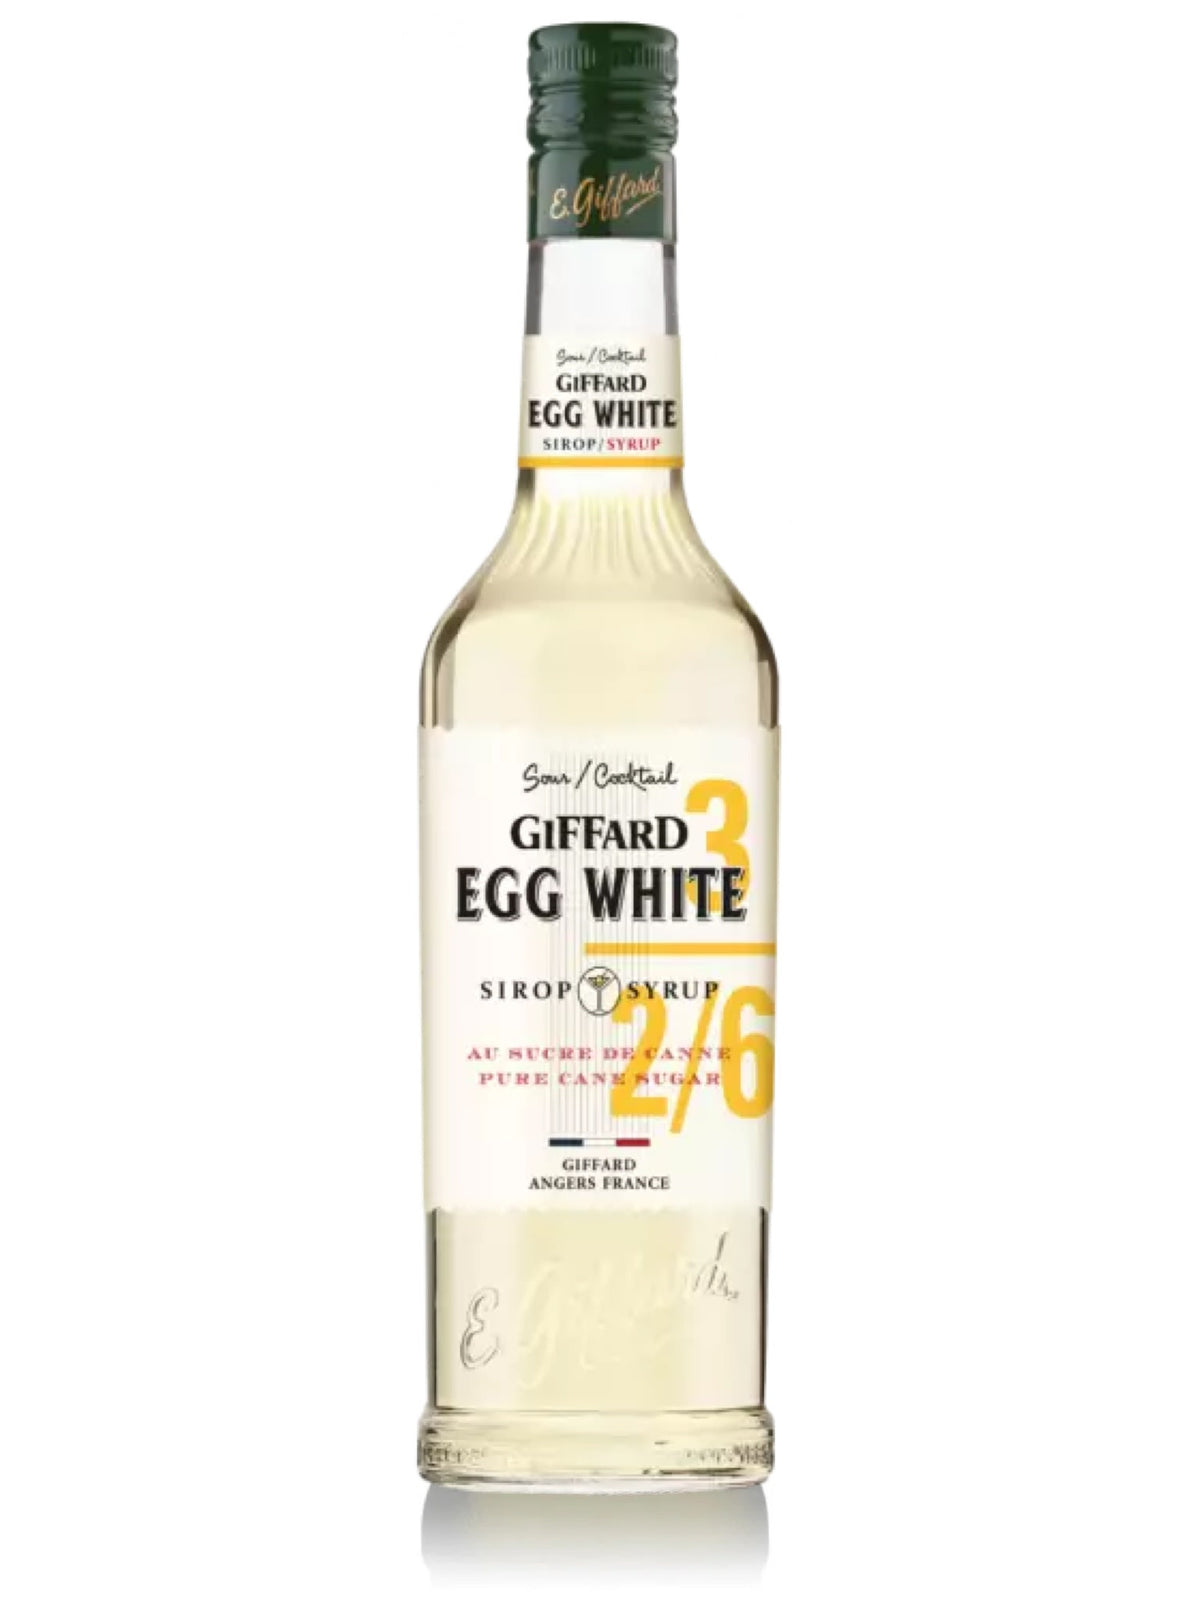 Giffard æggehvidesirup i en flaske, perfekt til at skabe skummende cocktails uden brug af æg